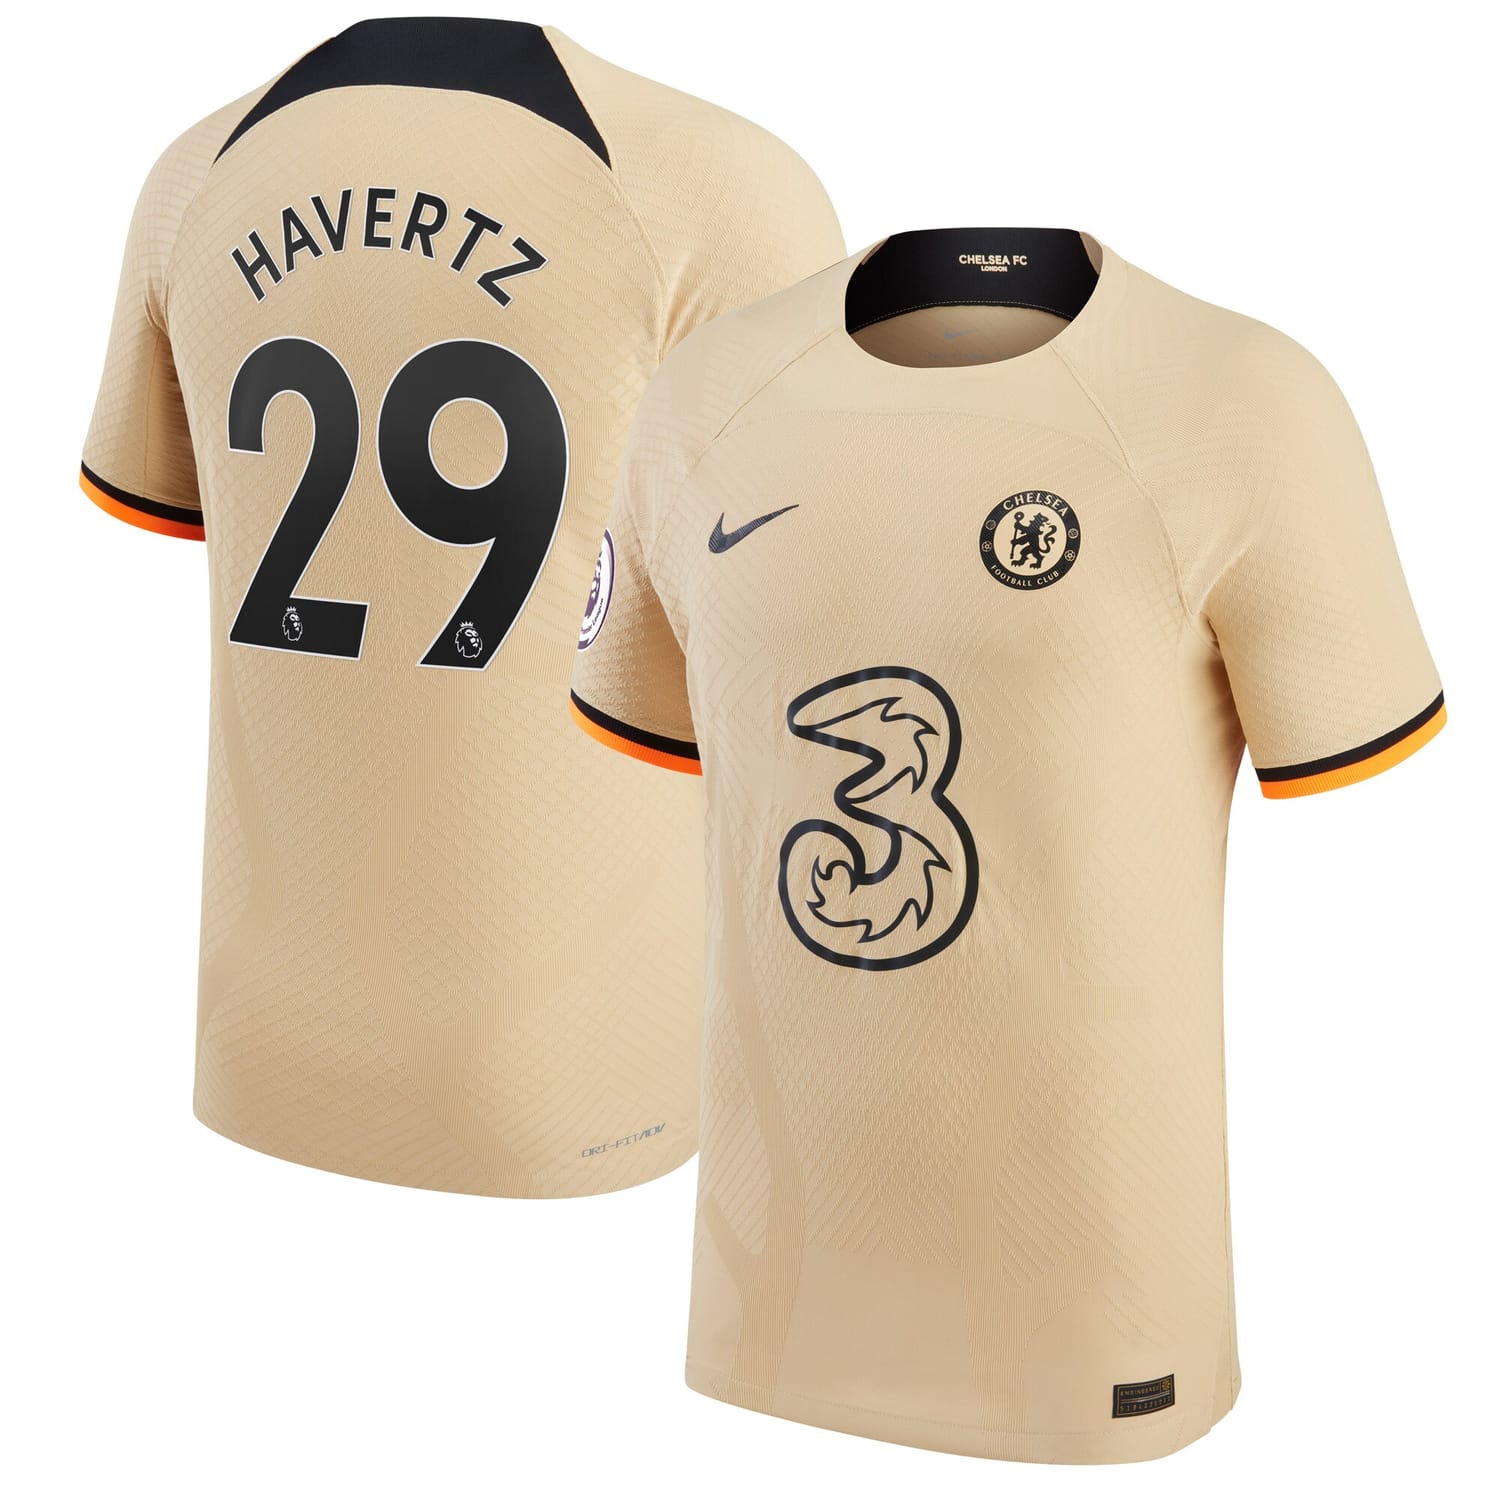 Premier League Chelsea Third Authentic Jersey Shirt Gold 2022-23 player Kai Havertz printing for Men